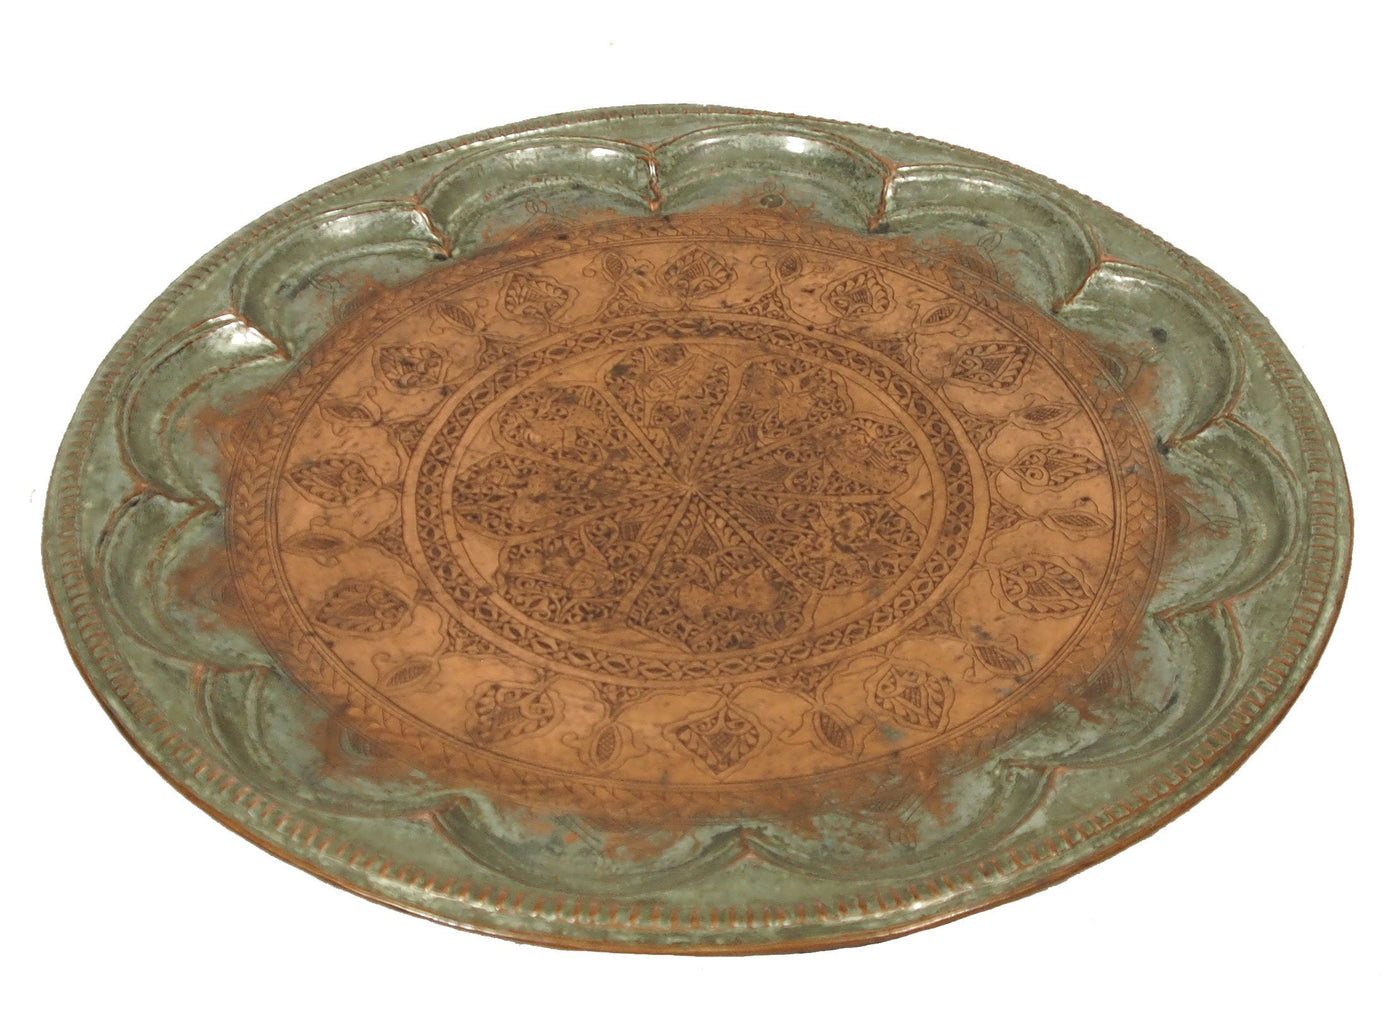 62 Ø antik osmanische islamische ägyptisch marokkanisch orient Kupfer tablett Teetisch Teller beisteltisch tisch aus Afghanistan No:16/26  Orientsbazar   